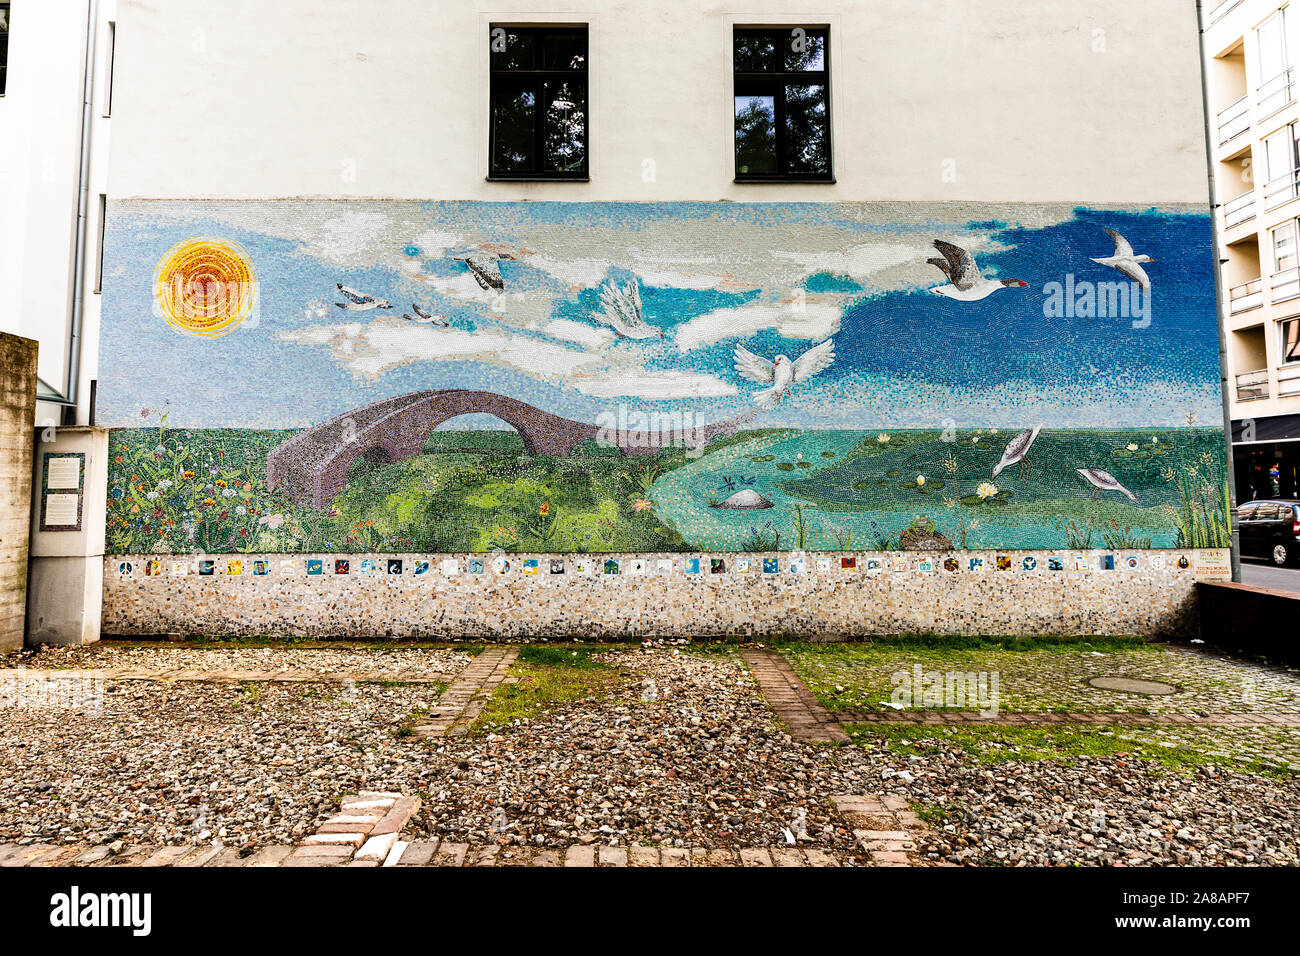 CITYarts mur de la paix, Berlin, Allemagne. Une partie de l'esprit Programme theYoung Construire des ponts. Banque D'Images